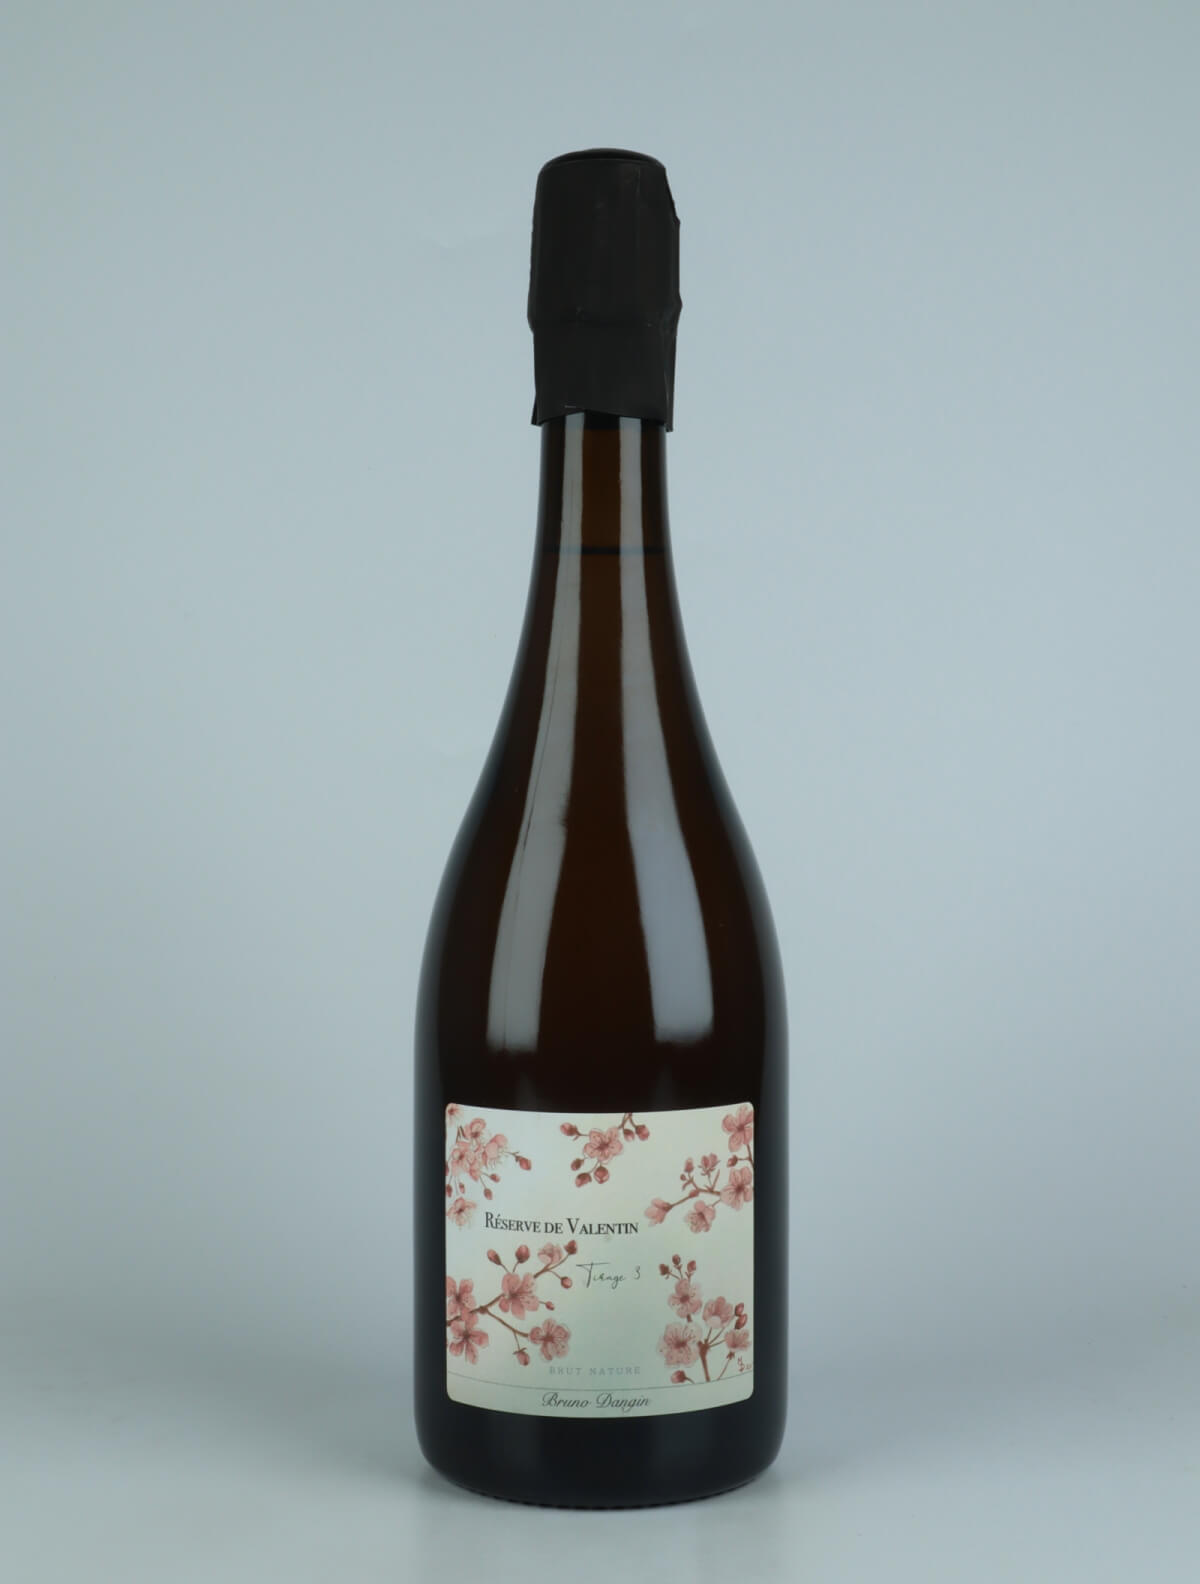 A bottle N.V. Reserve de Valentin Sparkling from Domaine Bruno Dangin, Burgundy in France